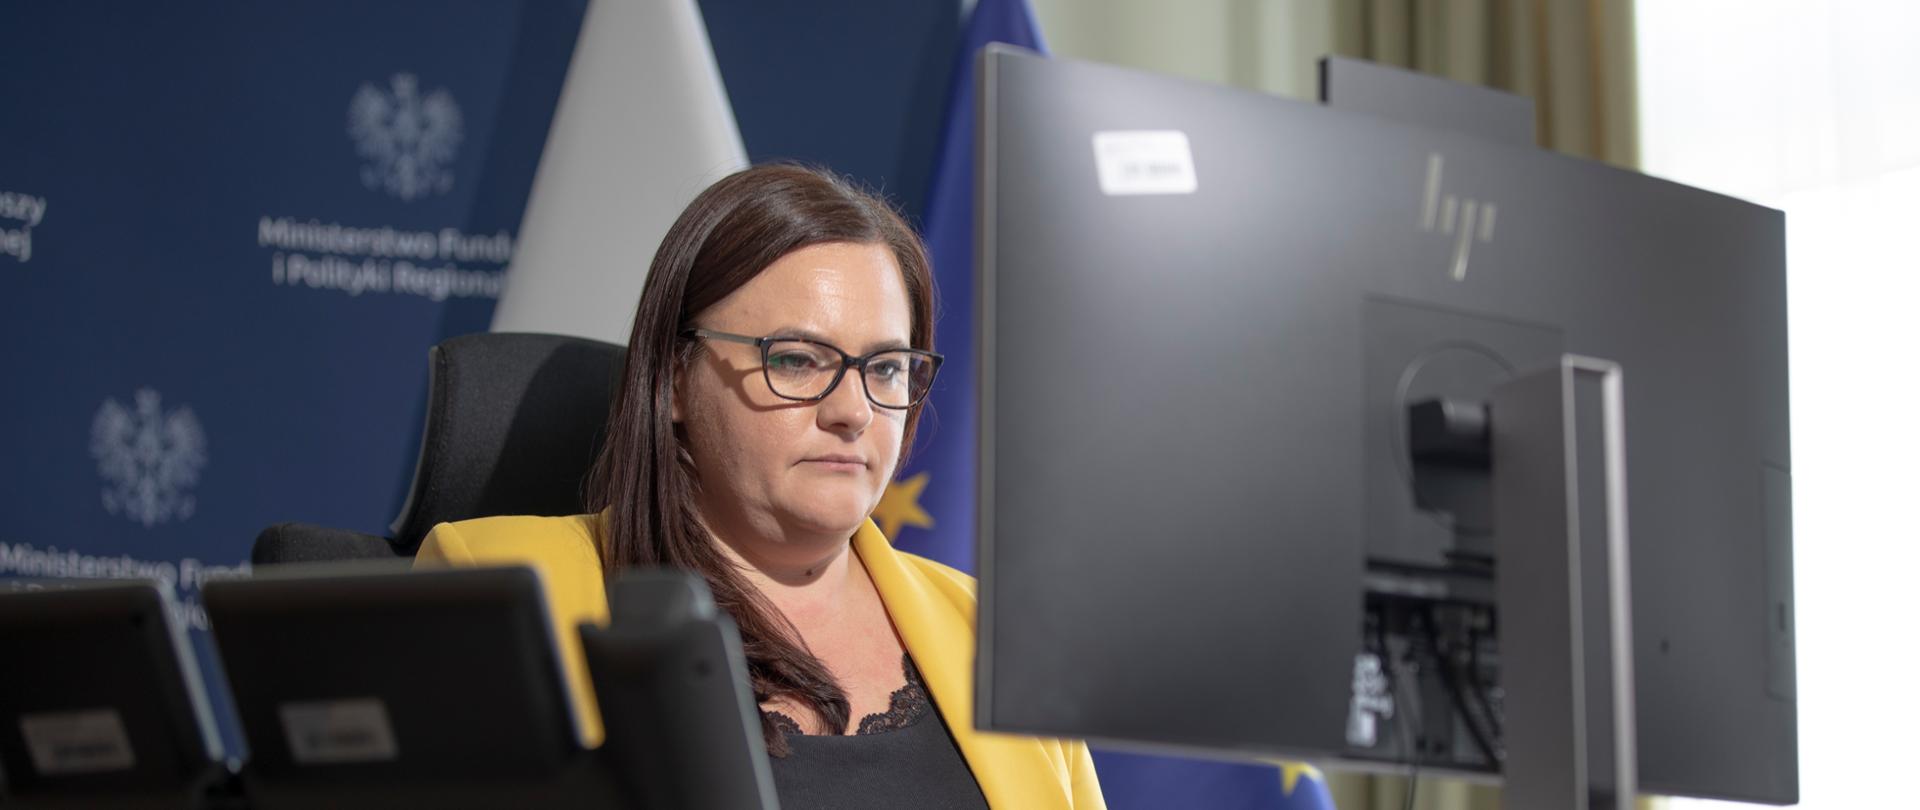 Wiceminister Małgorzata Jarosińska-Jedynak przed monitorem. Za nią ścianka ministerialna i flagi PL i UE.